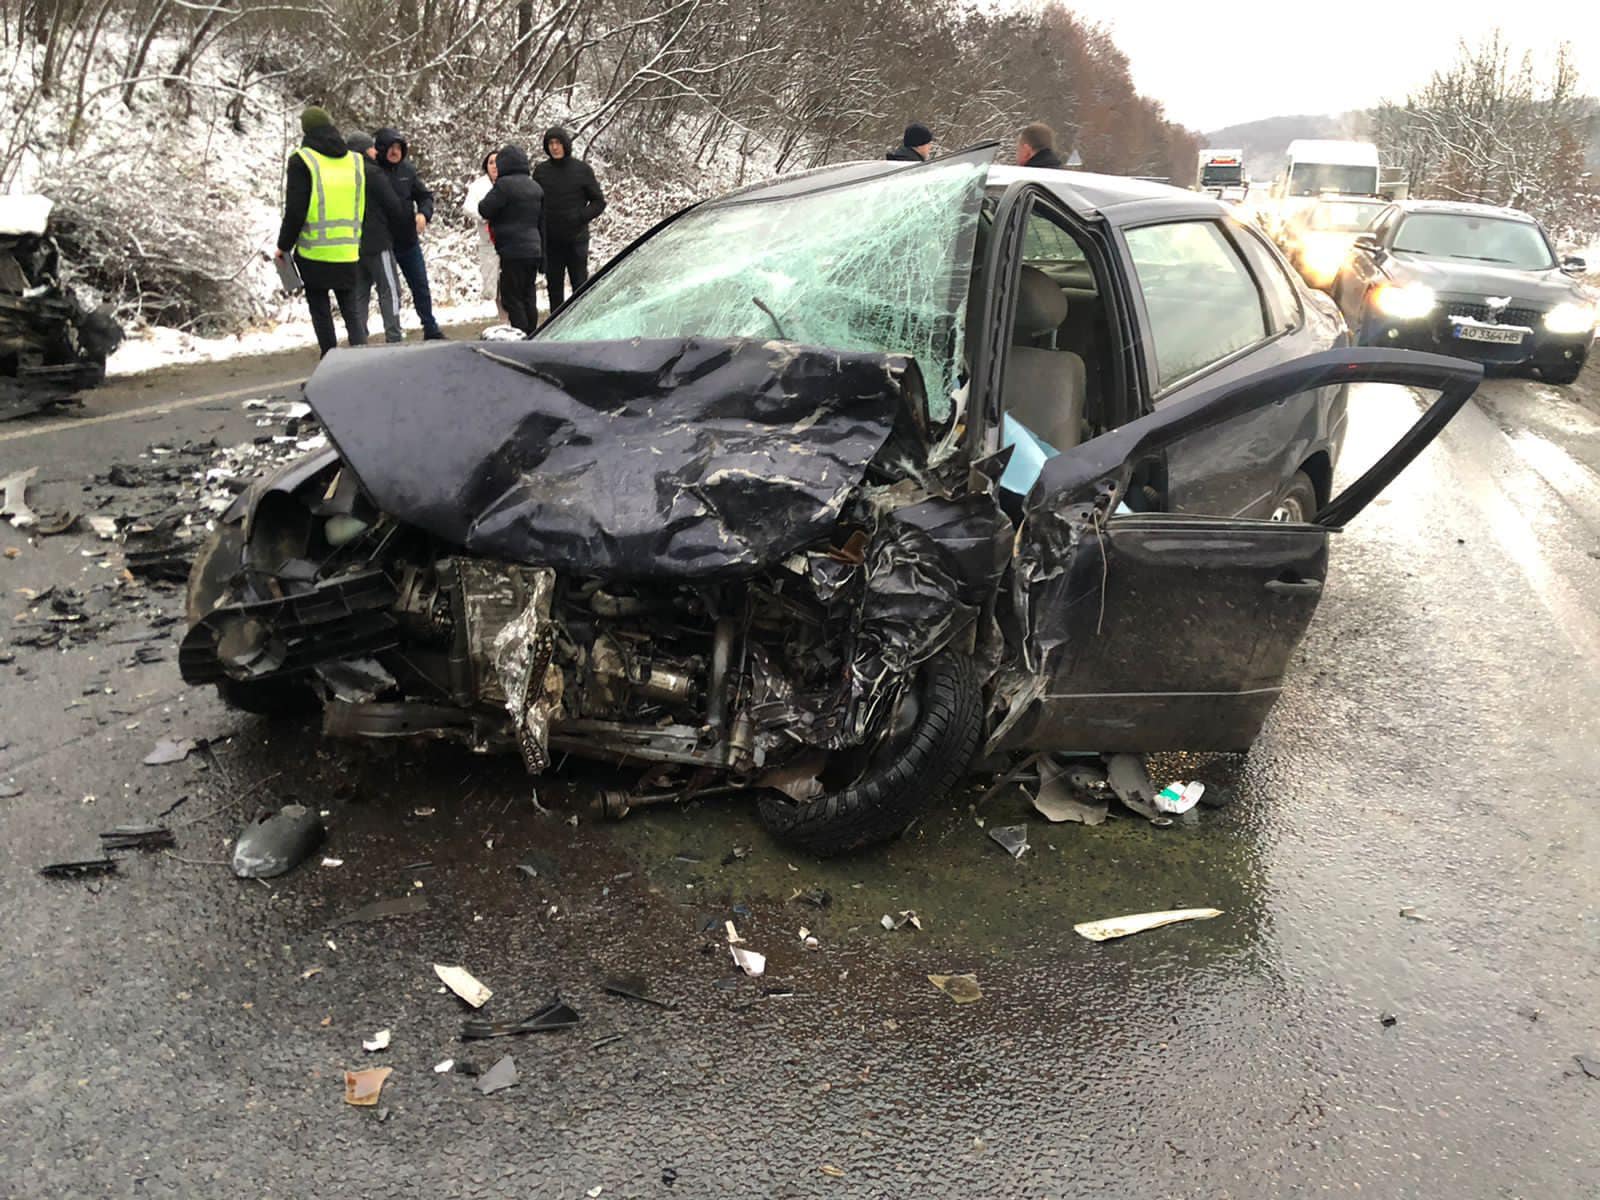 Вчора, 12 грудня, близько 14-ої години на виїзді з міста Мукачево по вулиці Томаша Масарика трапилася смертельна дорожньо-транспортна пригода за участі трьох автівок – LADA, Merсedes та КIA.